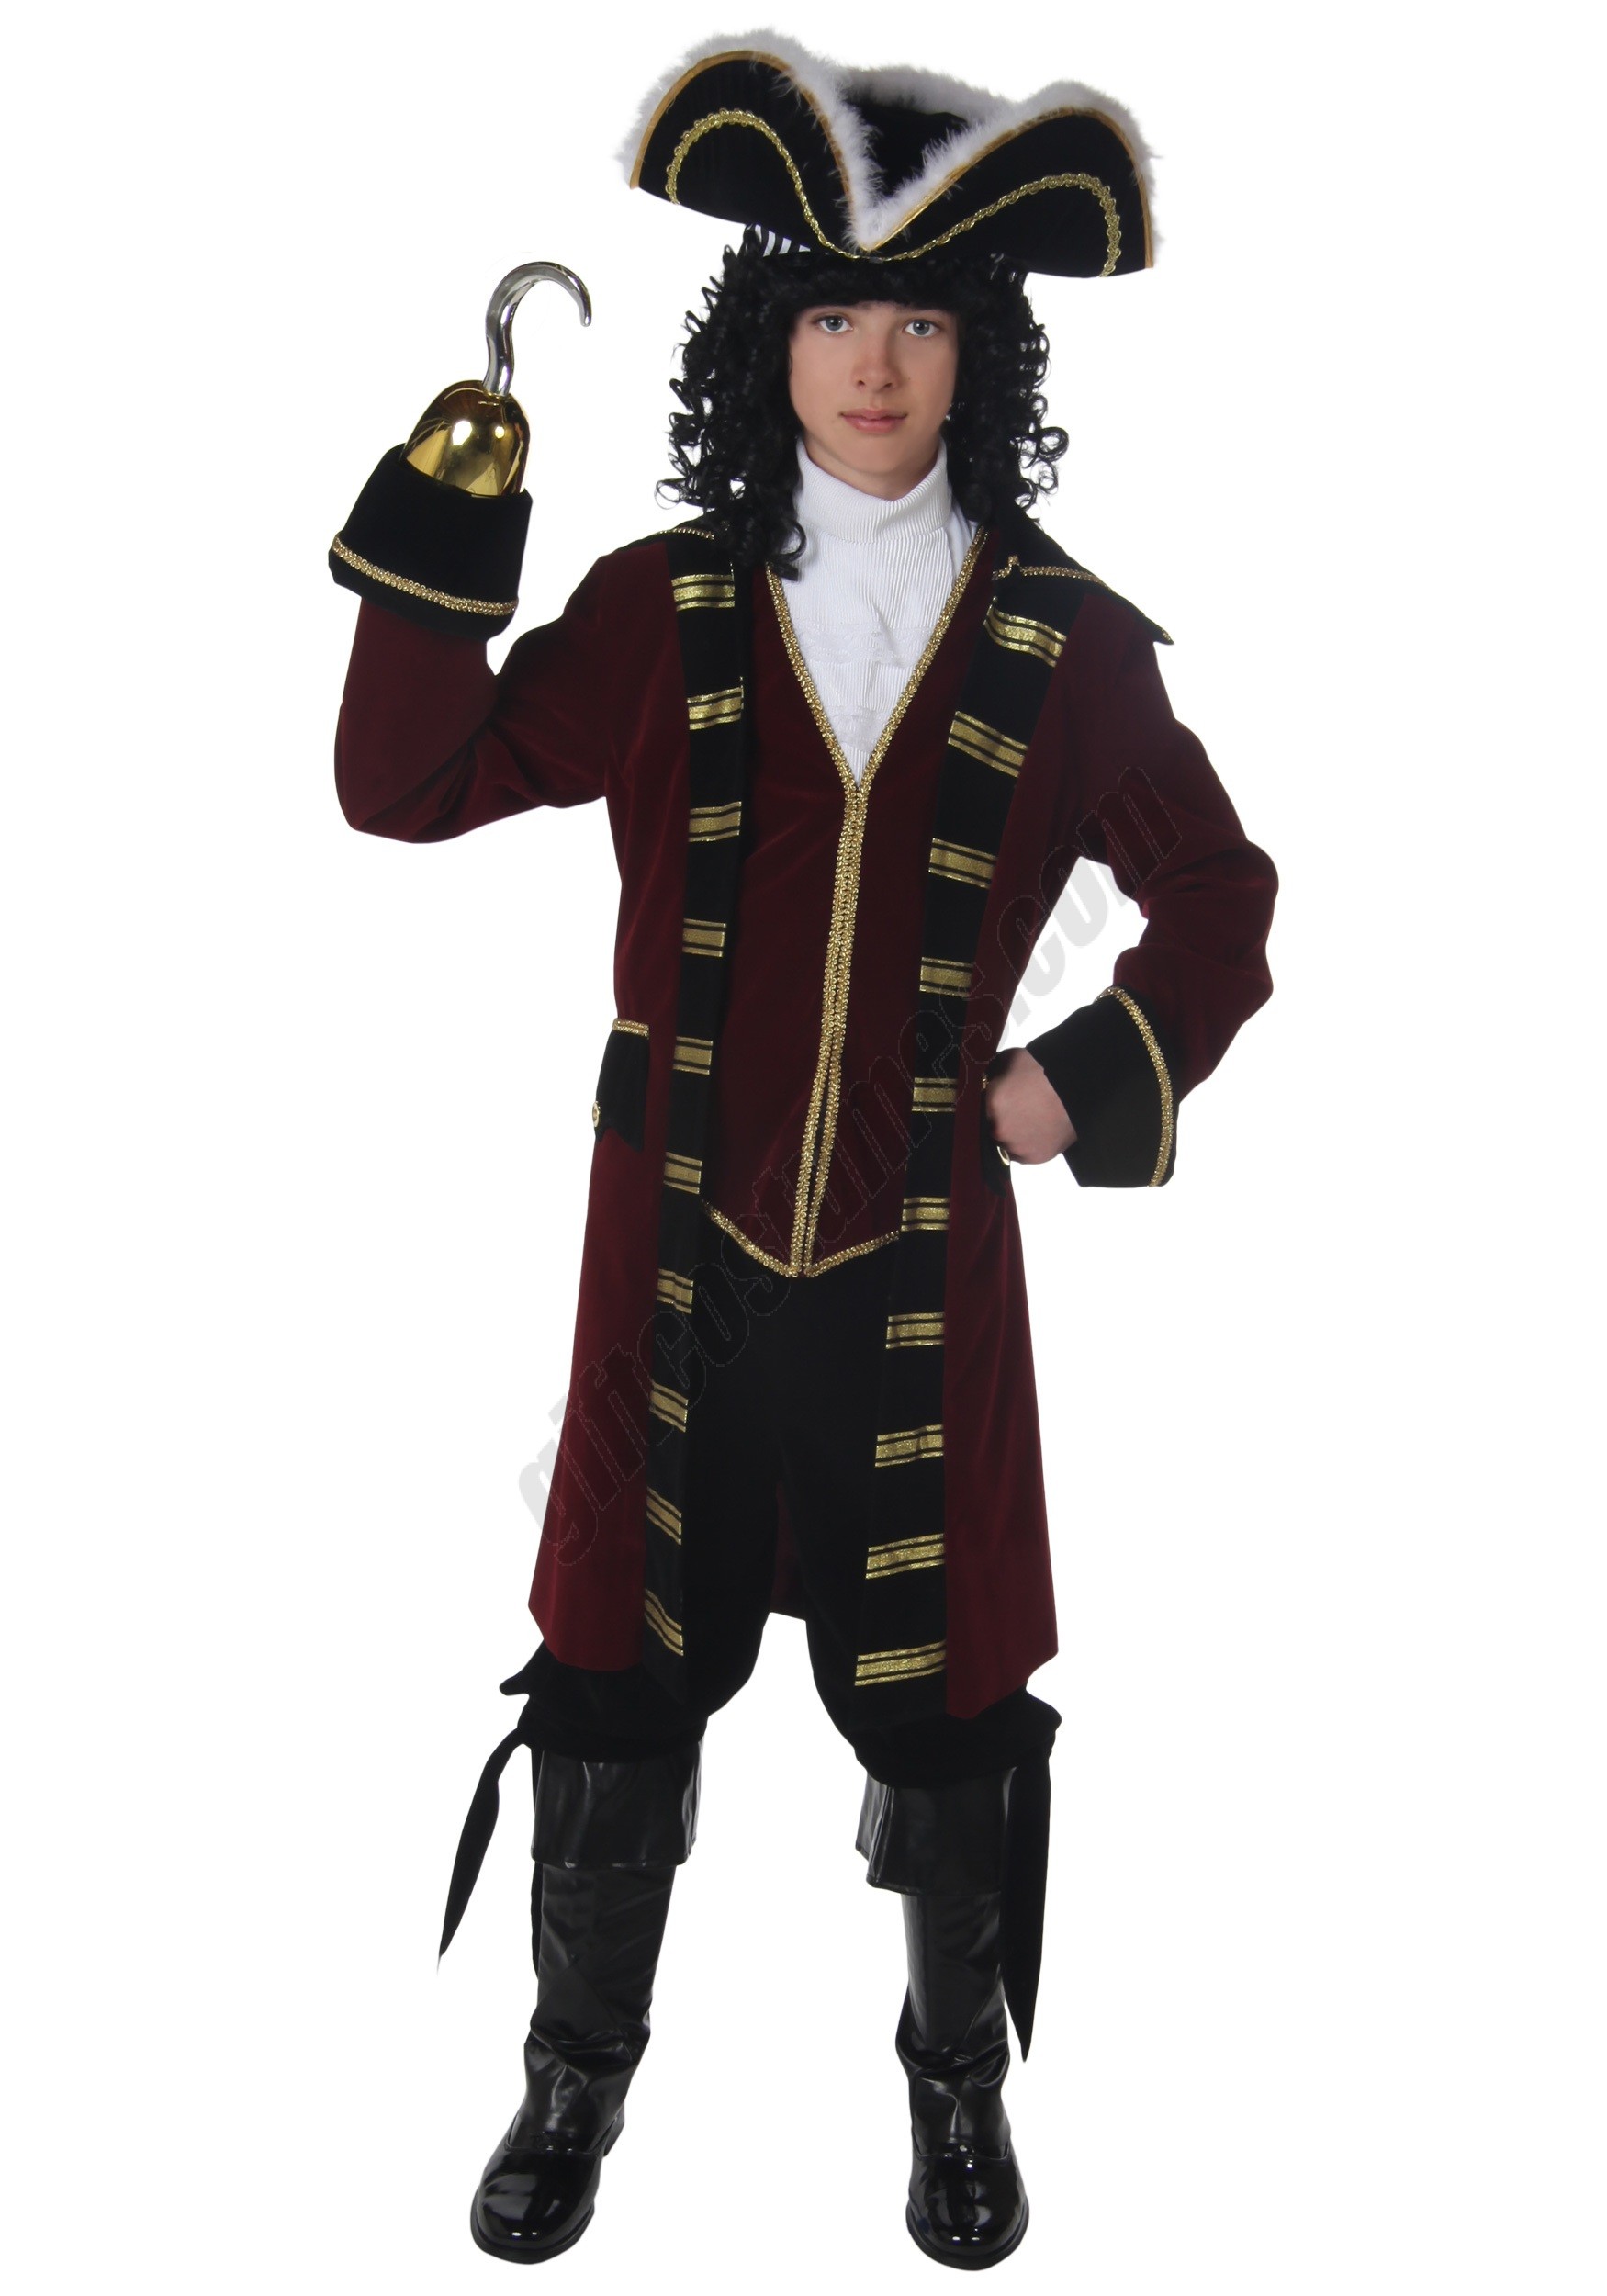 Captain Hook Boys Costume Promotions - Captain Hook Boys Costume Promotions